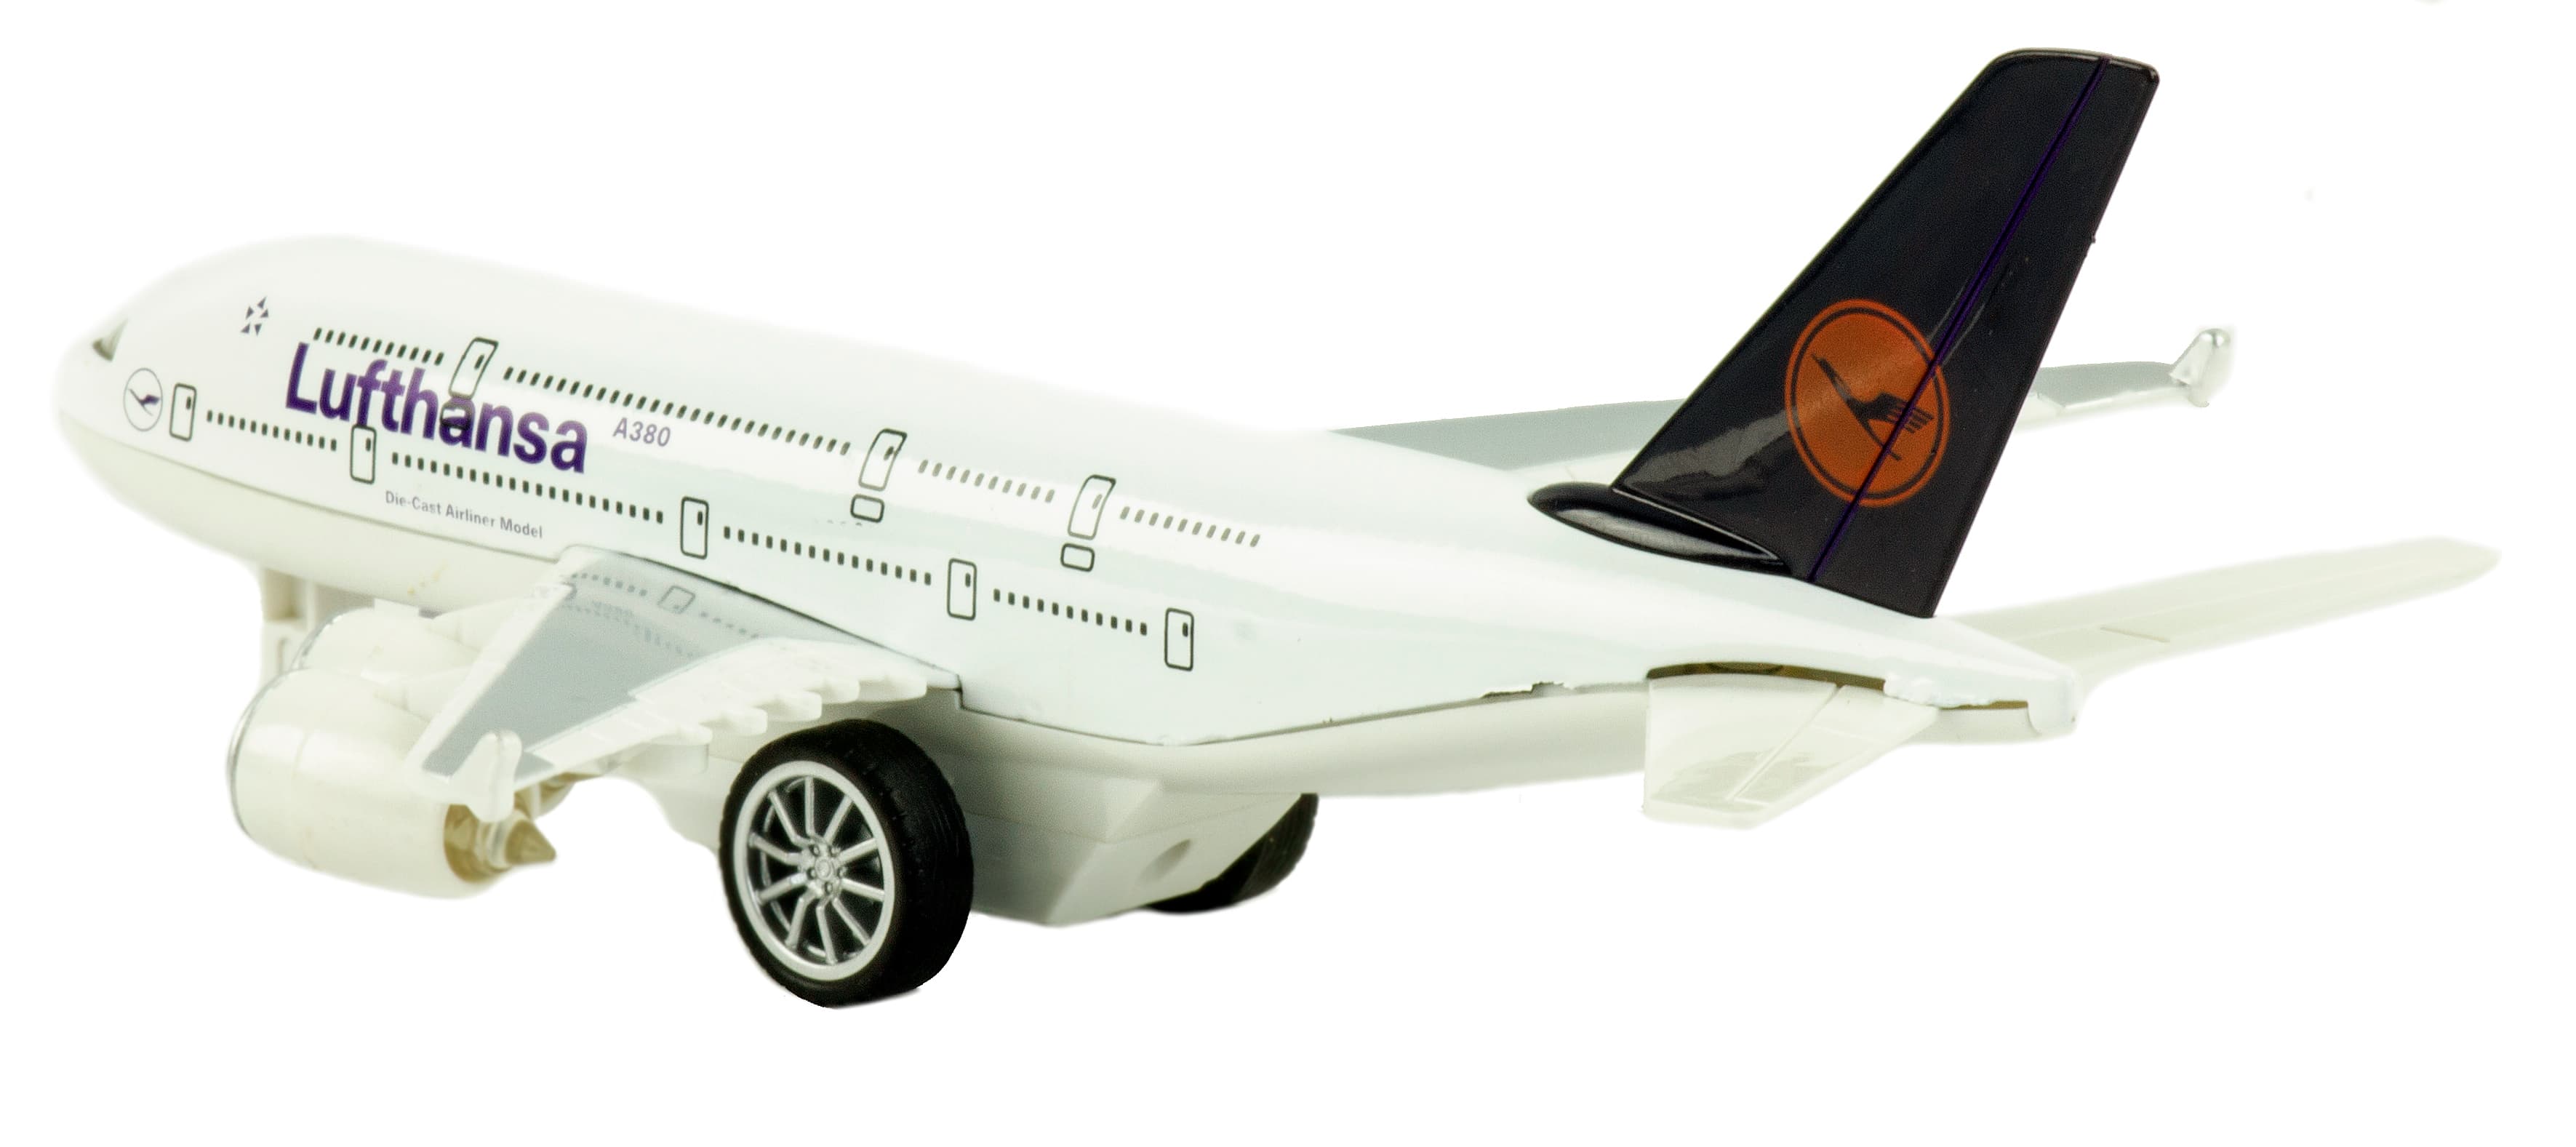 Металлический самолет 1:270 «AirBus A380» A380, 22 см., инерционный свет, звук / Микс